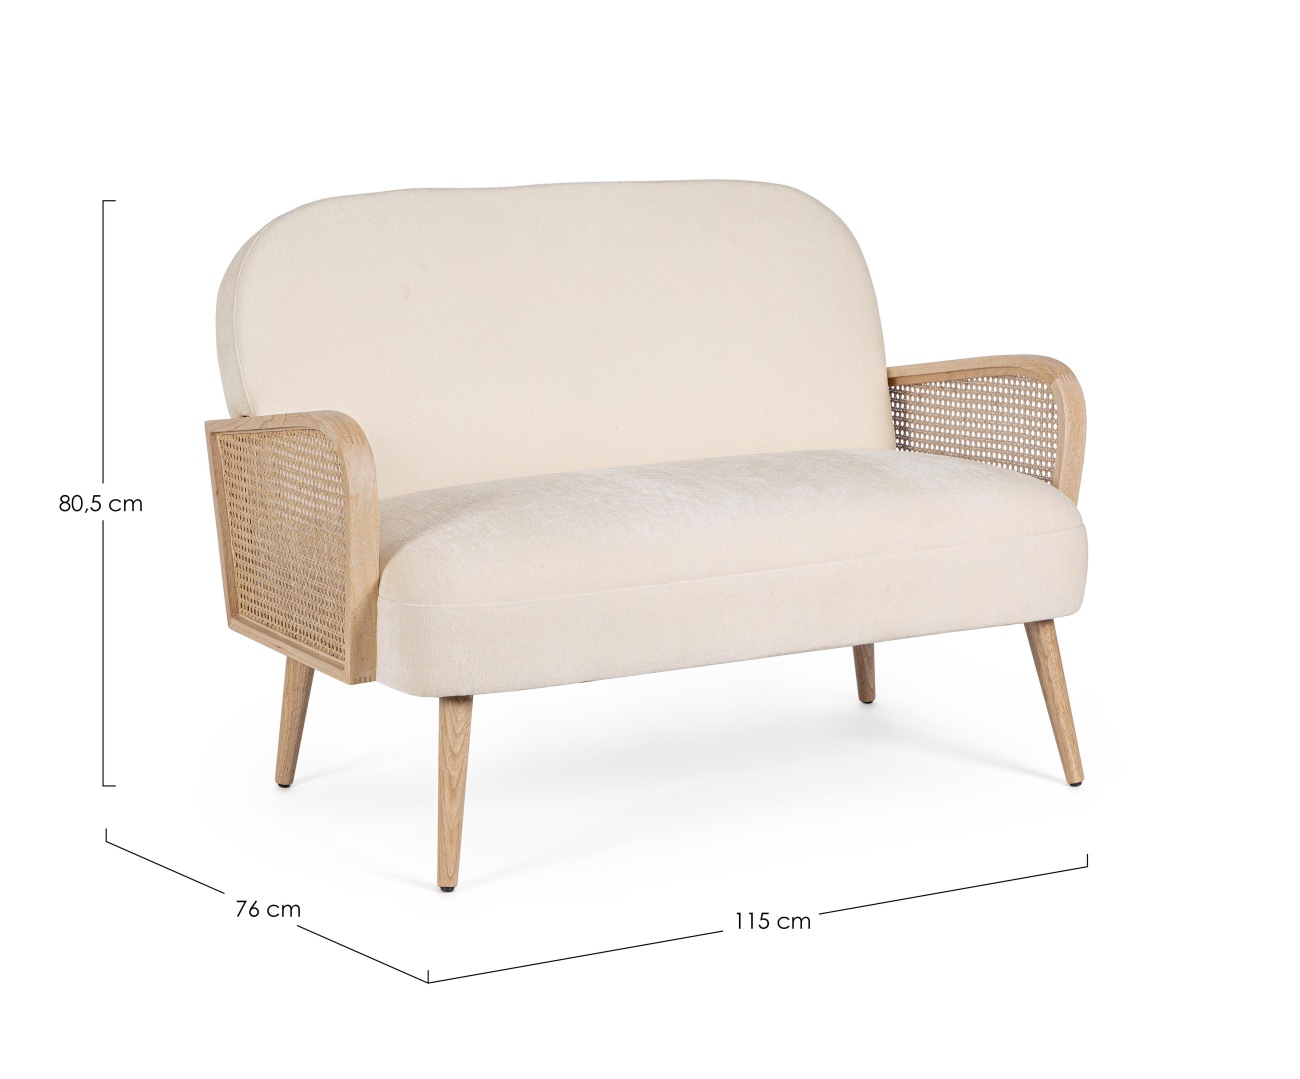 Das Sofa Dalida überzeugt mit seinem modernen Stil. Gefertigt wurde es aus einem Stoff-Bezug, welcher einen Creme Farbton besitzt. Das Gestell ist aus Kautschukholz und hat eine natürliche Farbe. Das Sofa ist in der Ausführung 2-Sitzer.